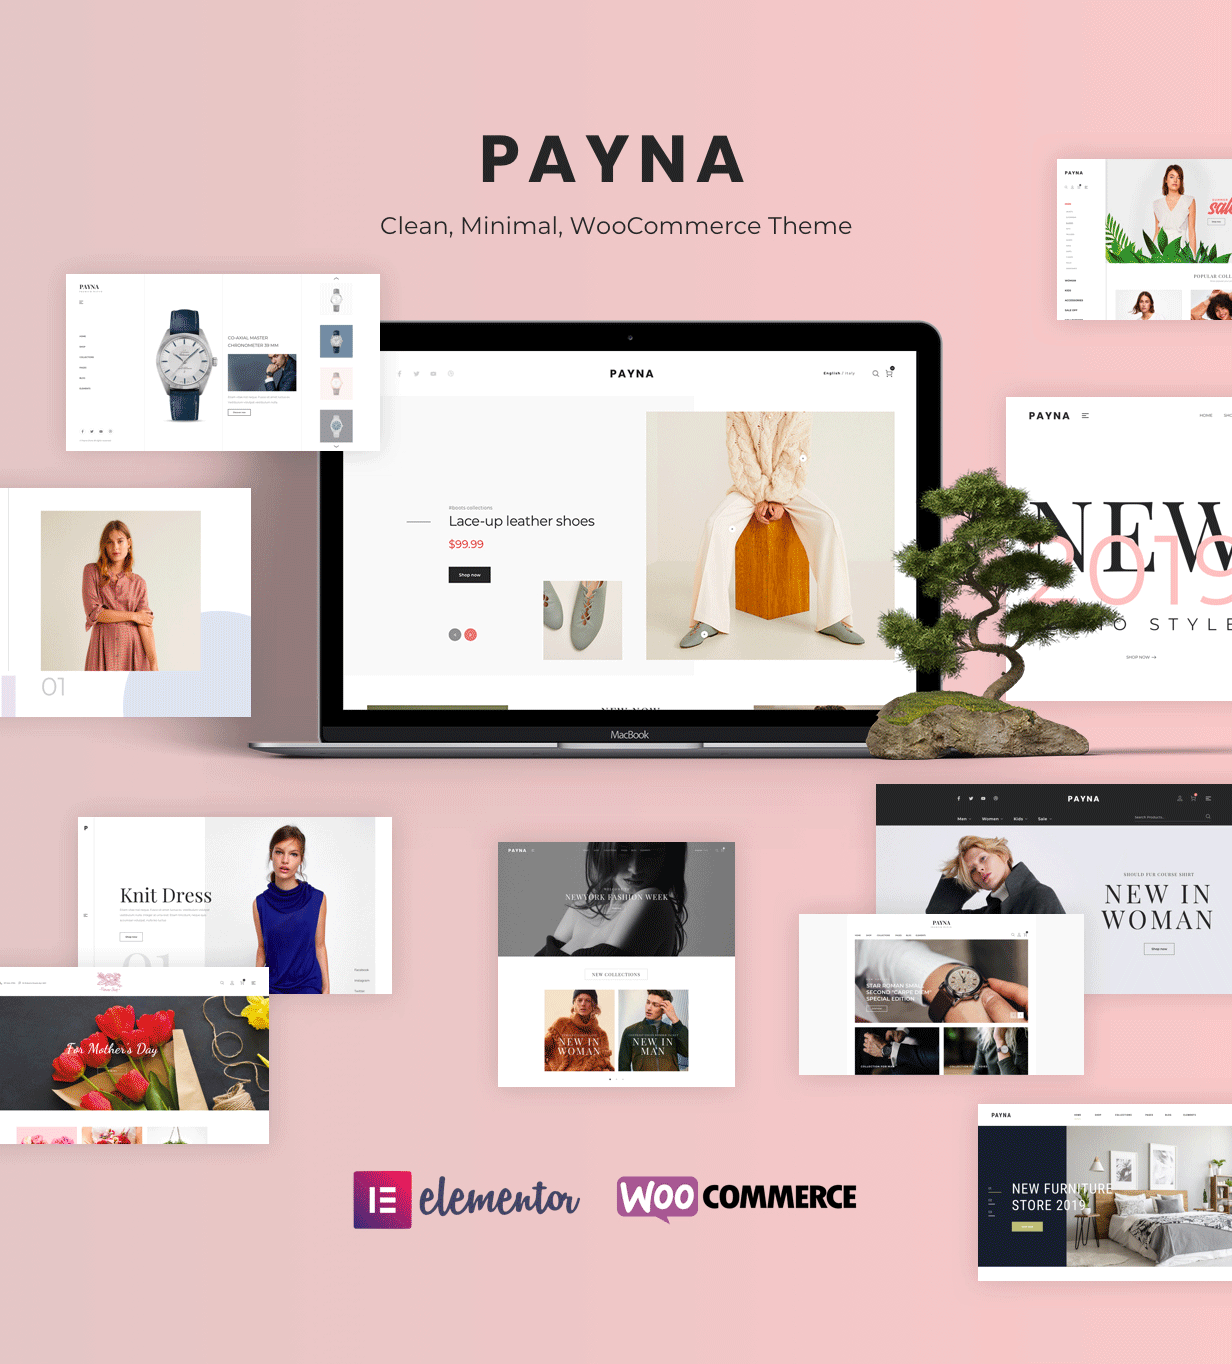 简约时装百货商场电子商城WordPress模板 Payna – Clean, Minimal WooCommerce Theme插图